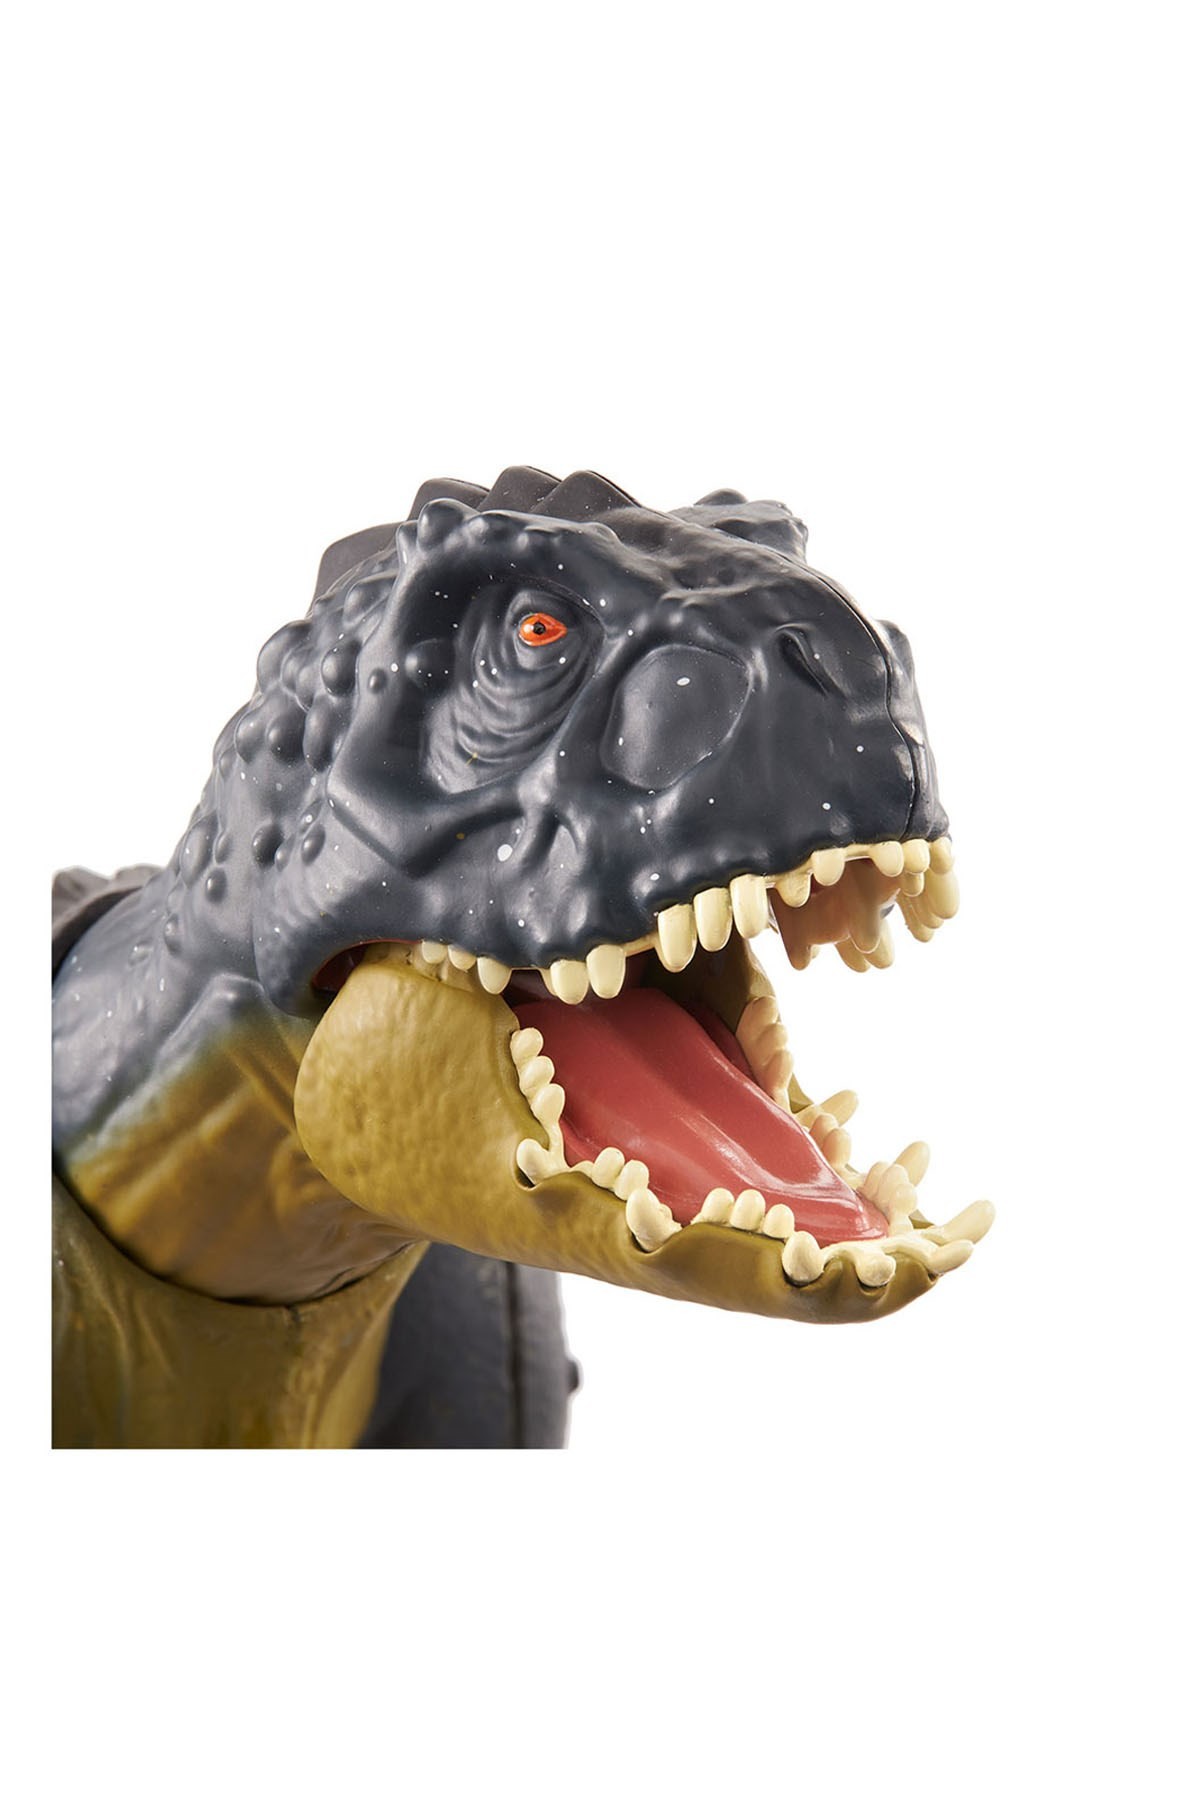 Jurassic World Saldırgan Dövüşçü Dinozor Figürü